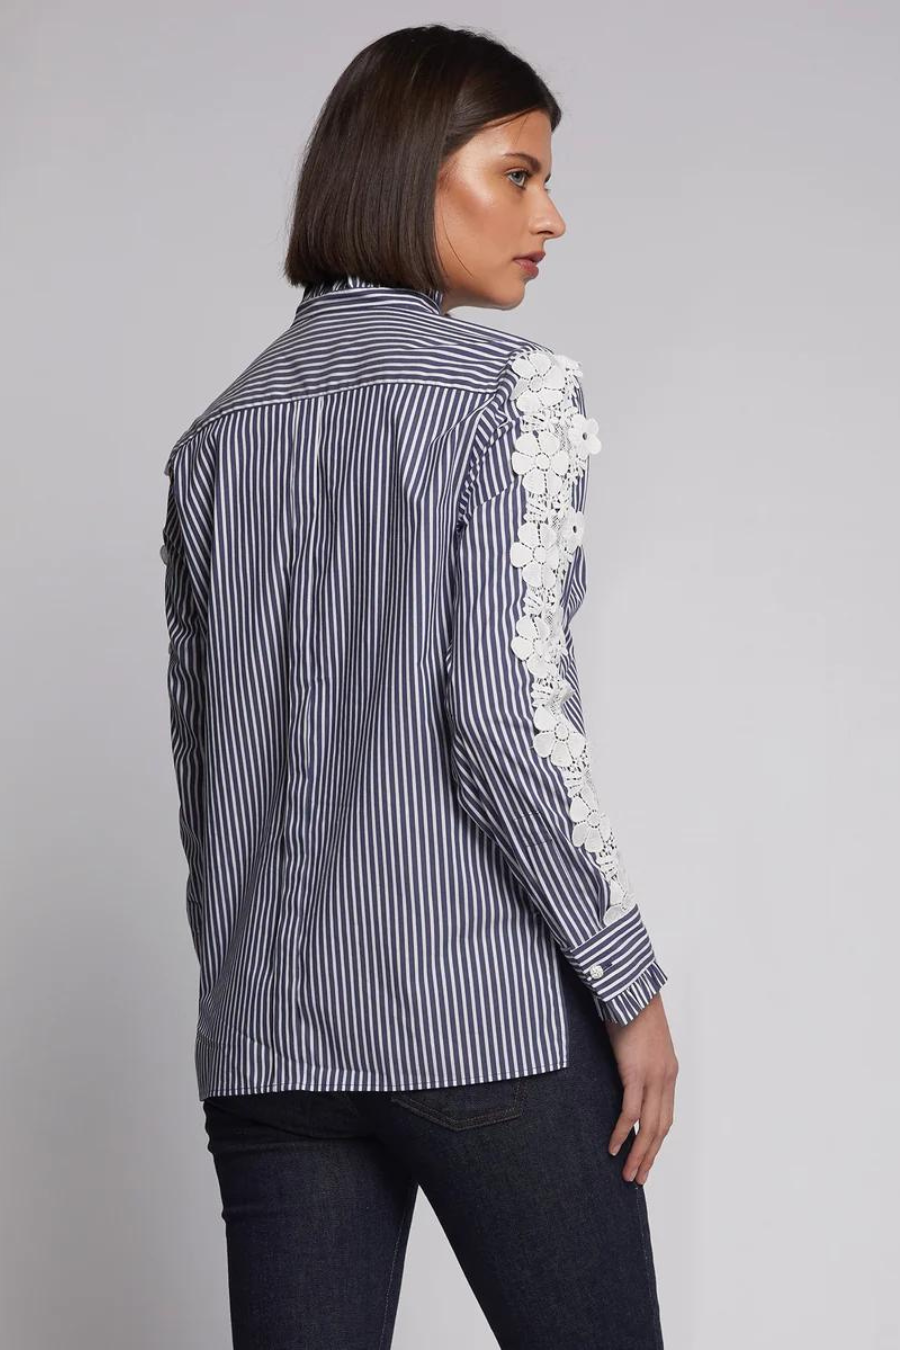 Vilagallo Diana Navy Stripe Lace Sleeve Shirt